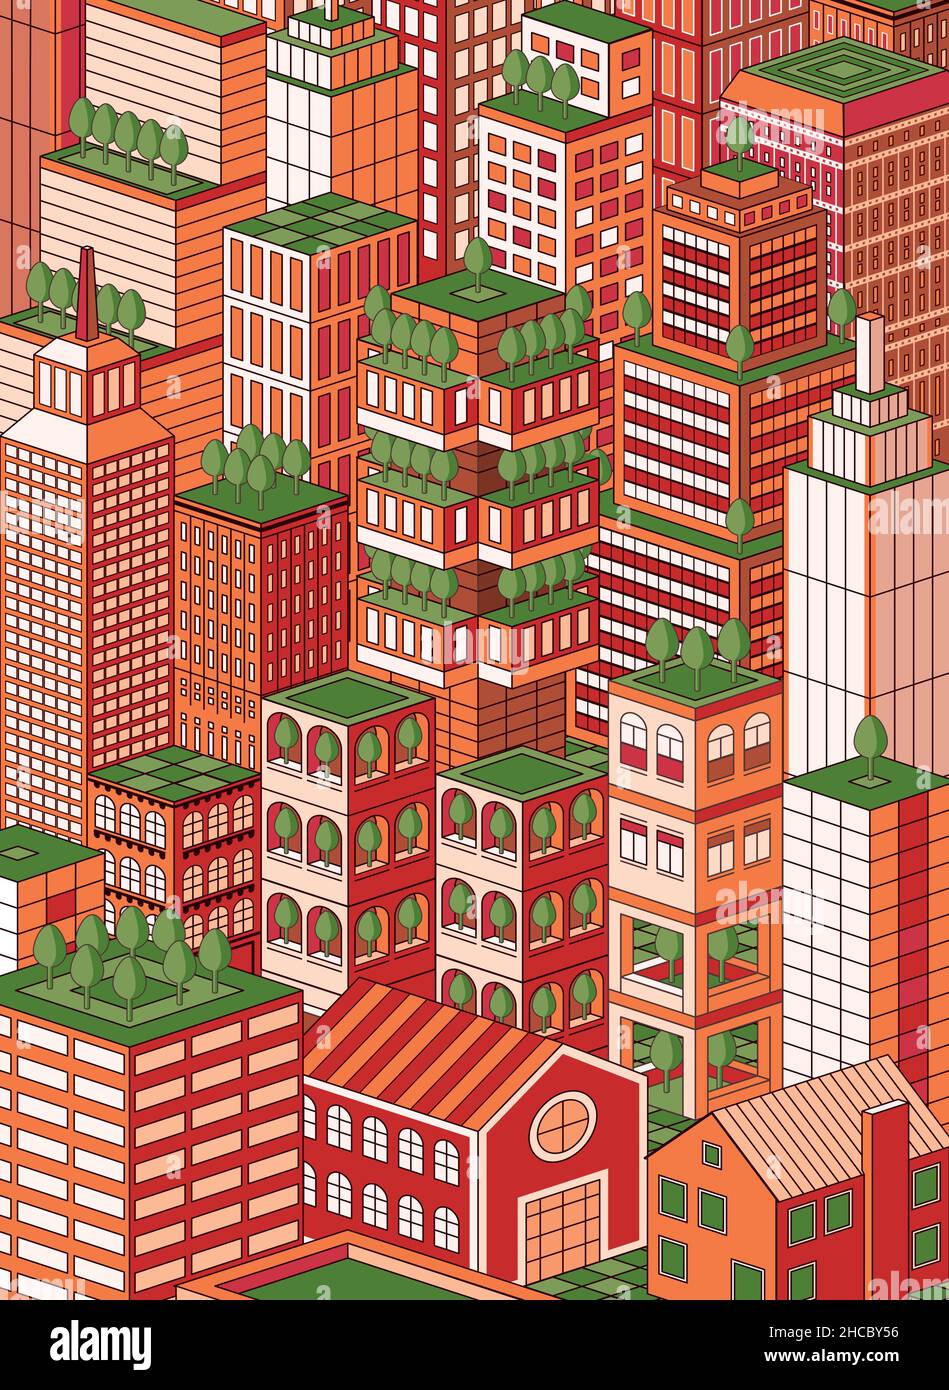 Vektor-isometrische Darstellung einer grün denkenden Stadt, jedes Gebäude ist ein gruppiertes Element Stock Vektor